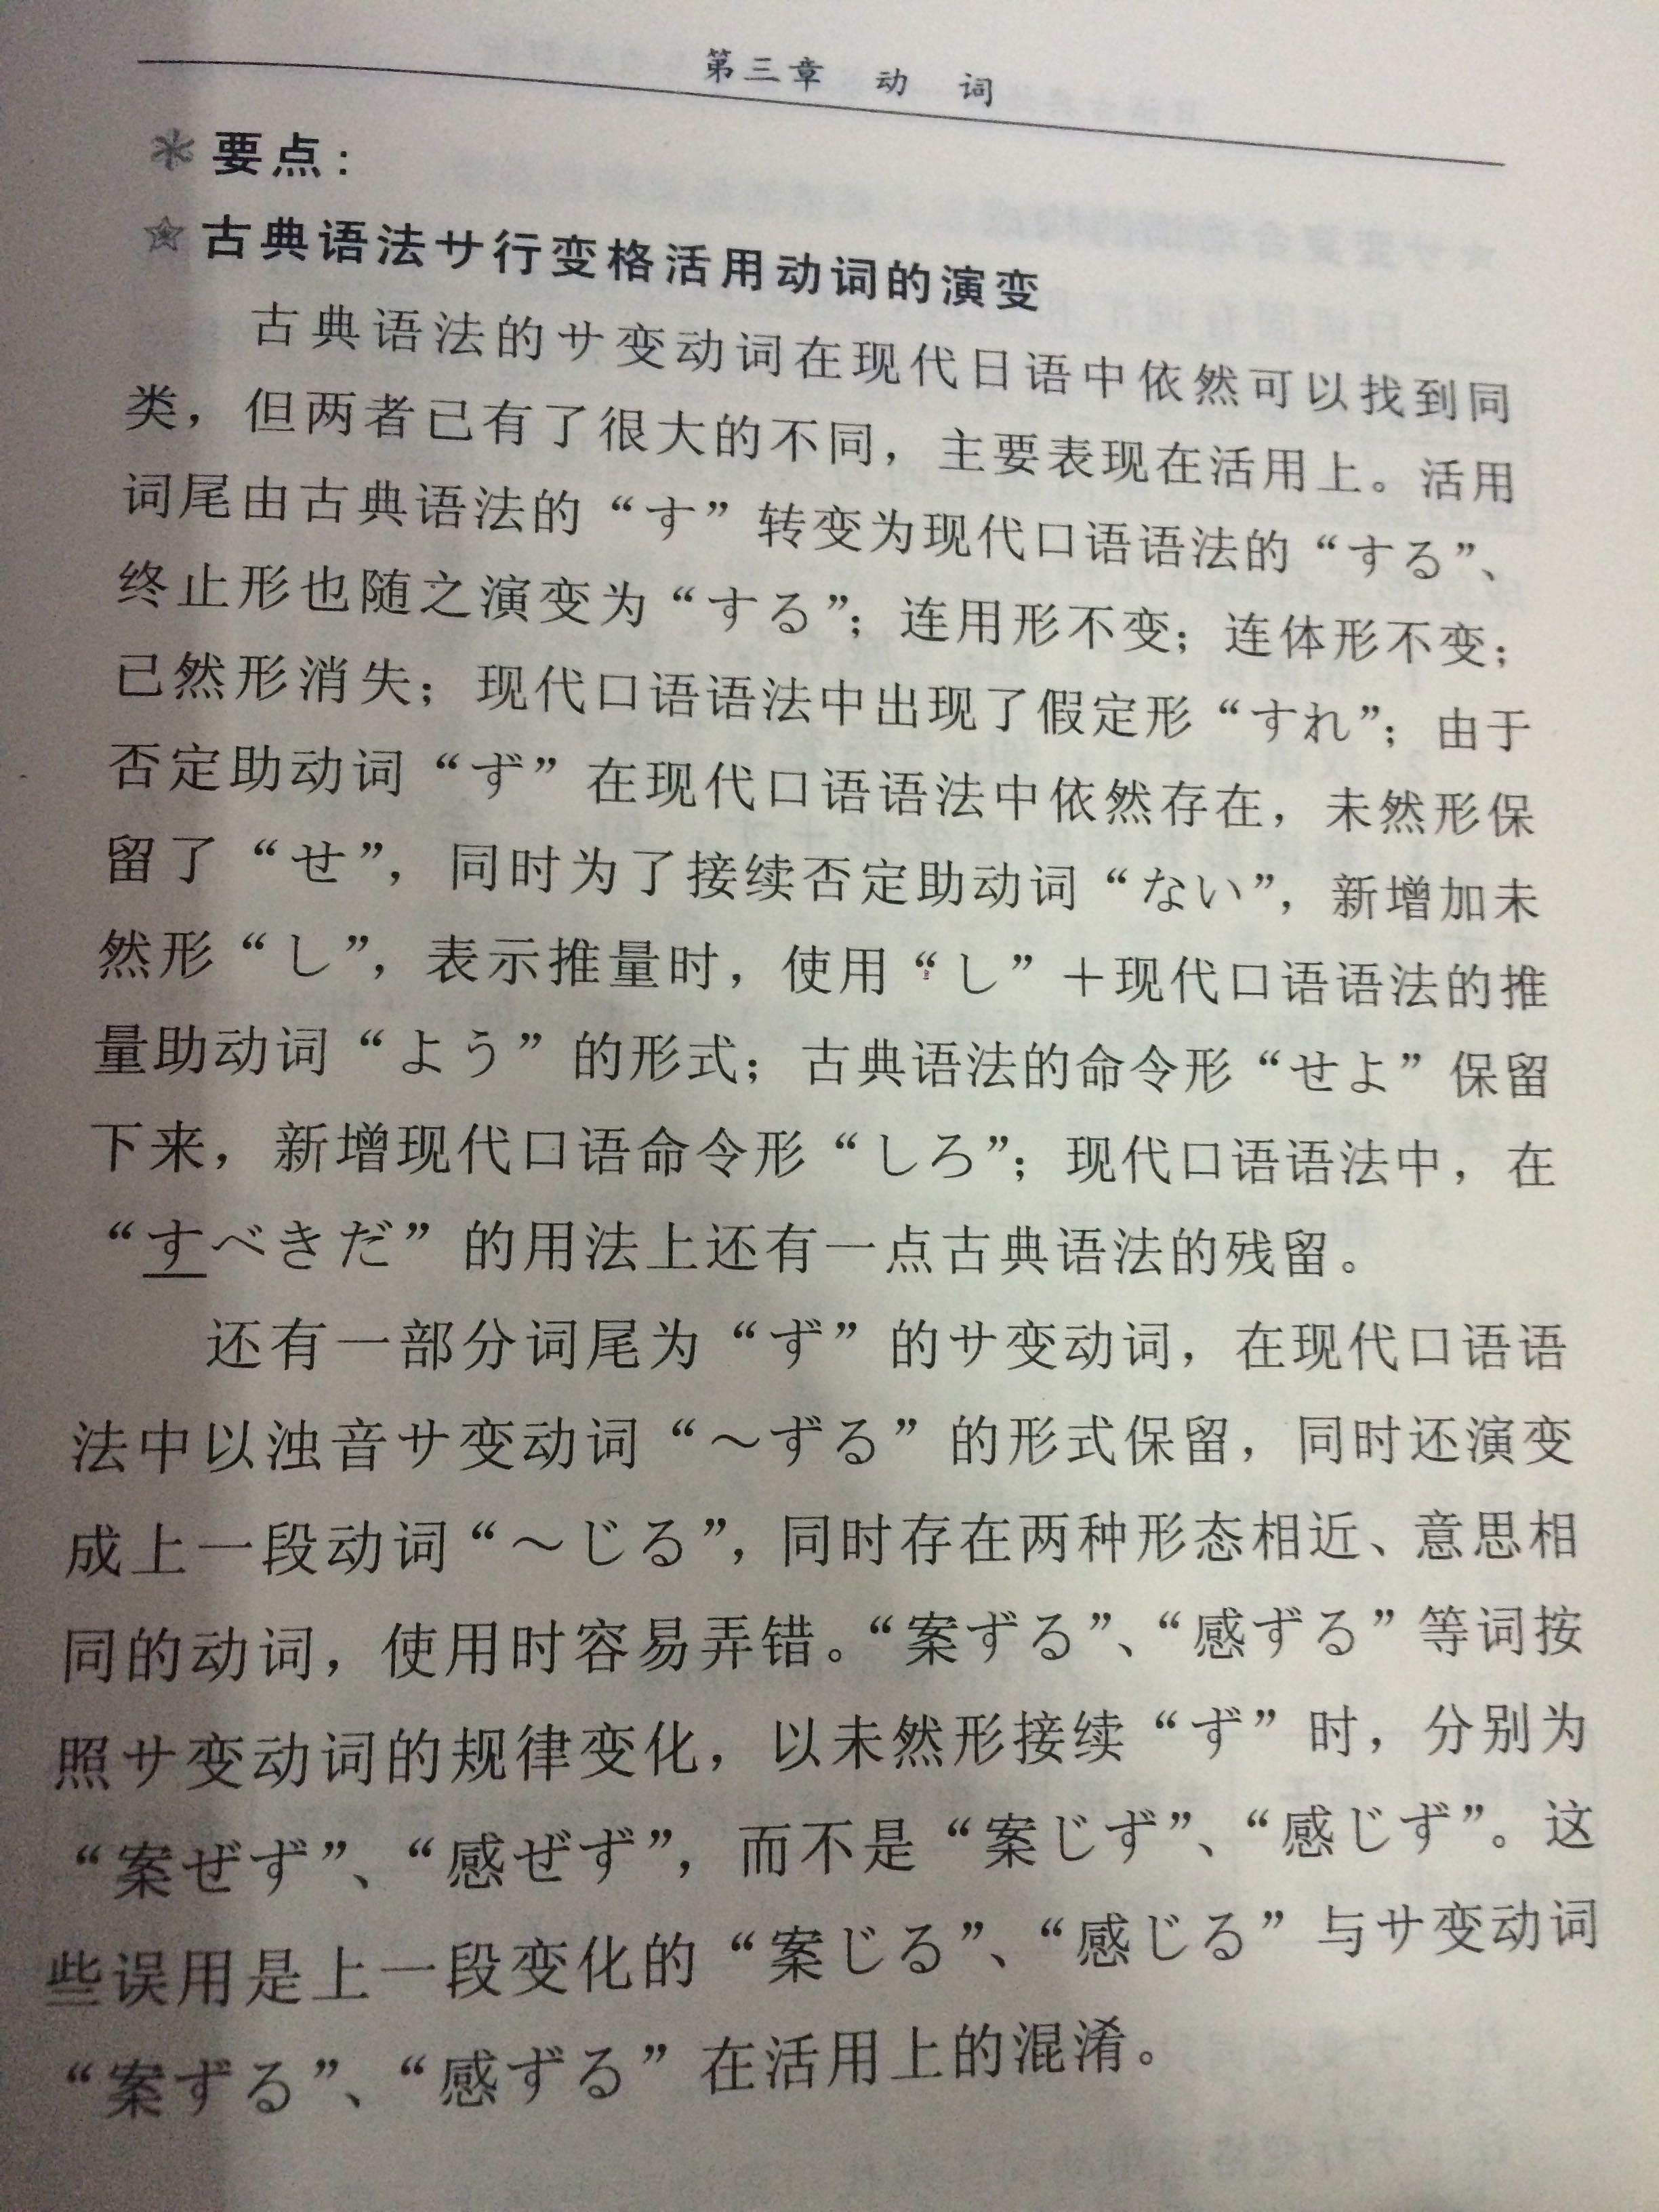 日语文书中「サ変动词」结尾的时候为什么「る